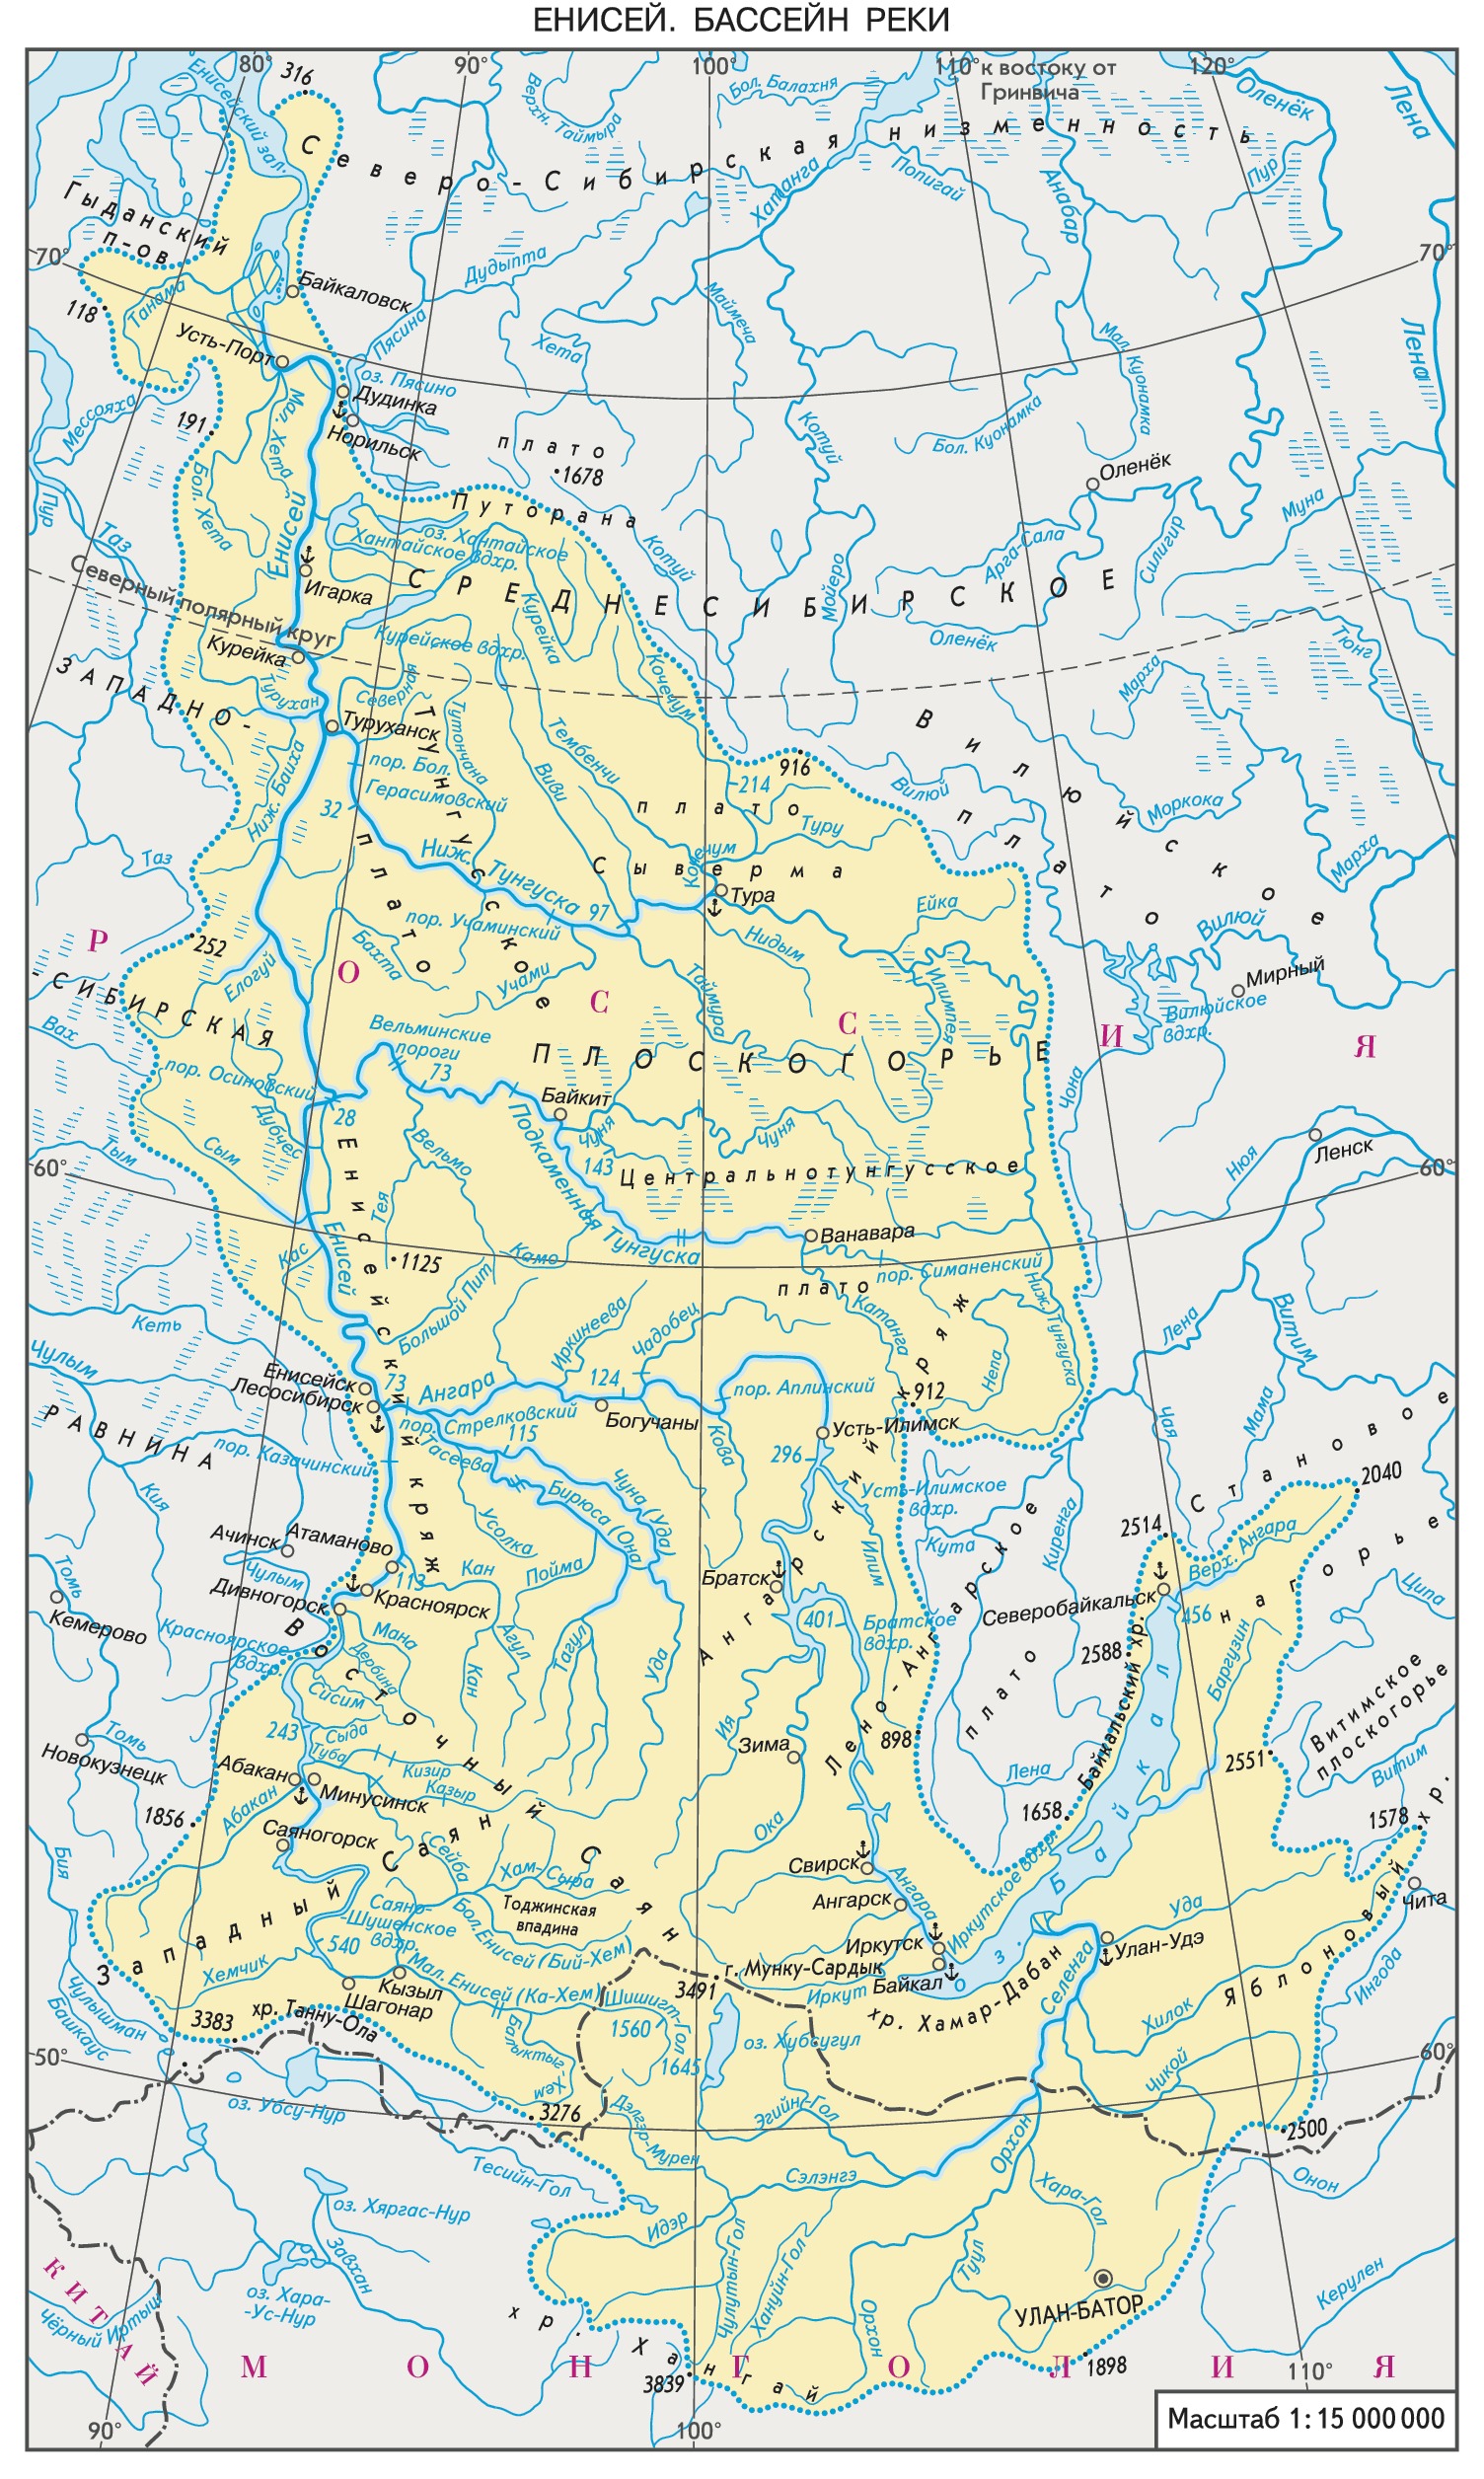 Крупные правые притоки енисея. Река Енисей на физической карте. Бассейн реки Енисей на карте. Бассейн реки Енисей. Границы бассейна реки Енисей на карте.